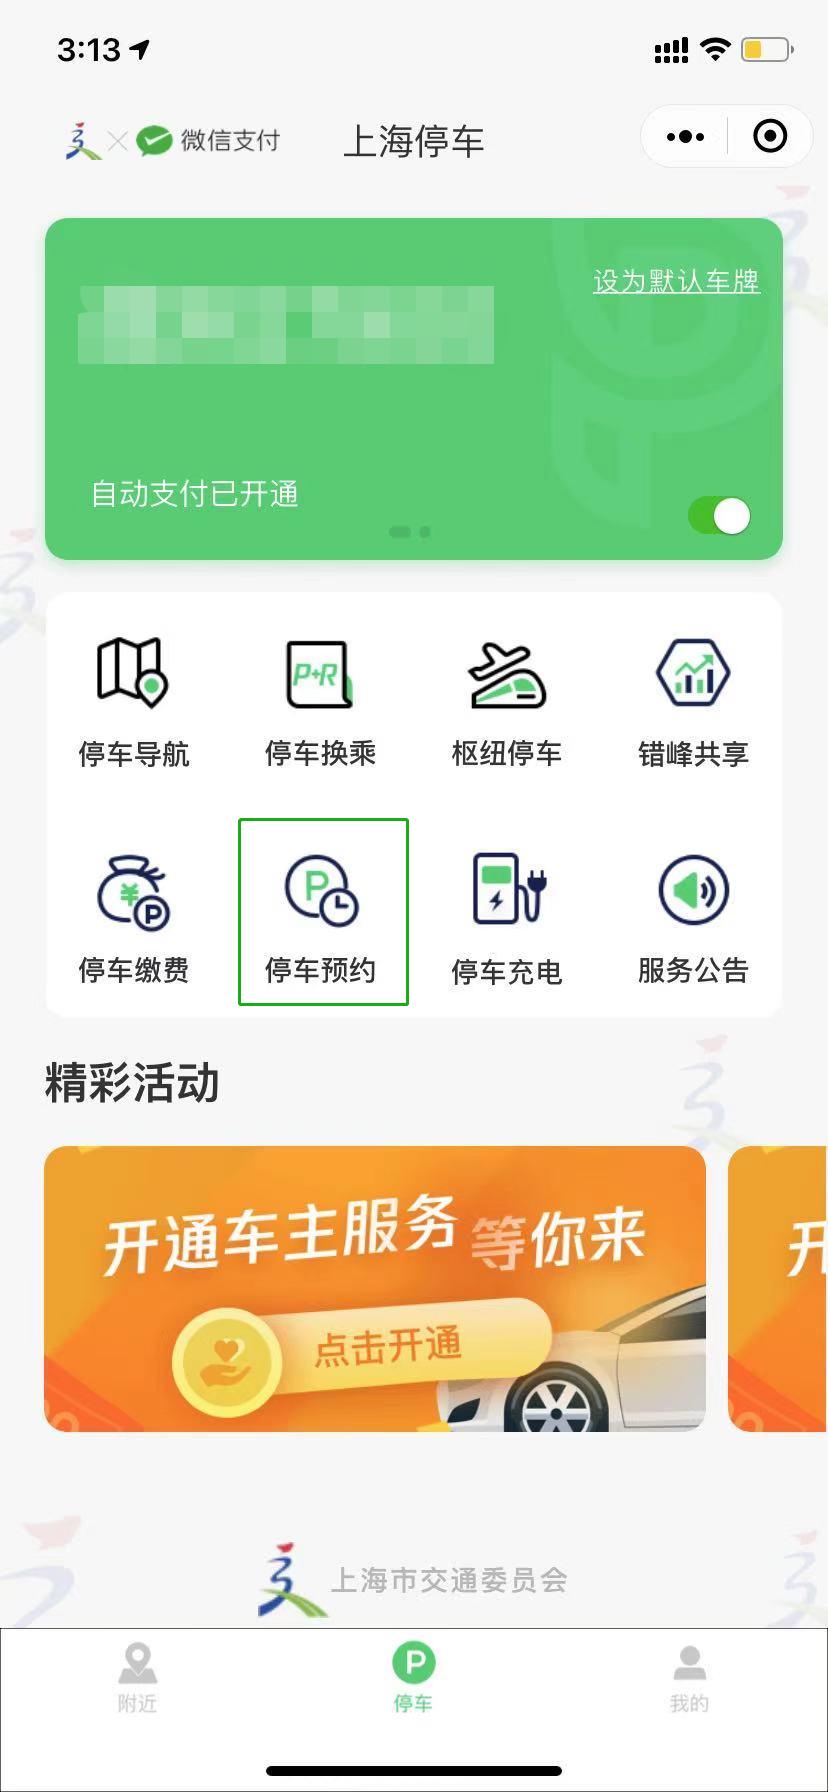 “上海停车”小程序新增医院停车预约功能，已在新华医院试点